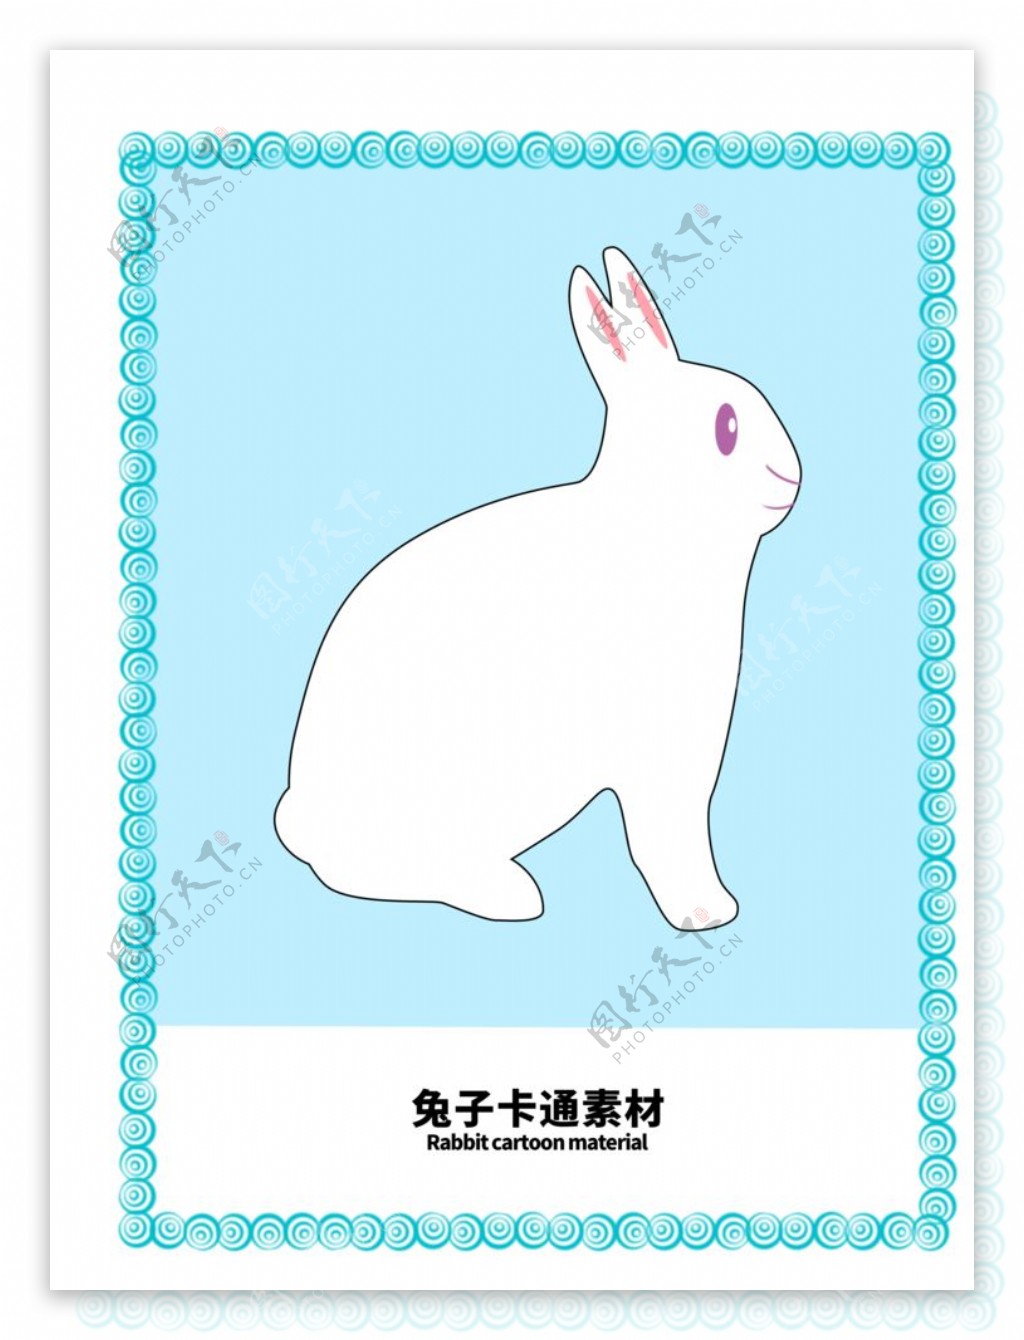 分层边框蓝色分栏兔子卡通素材图片